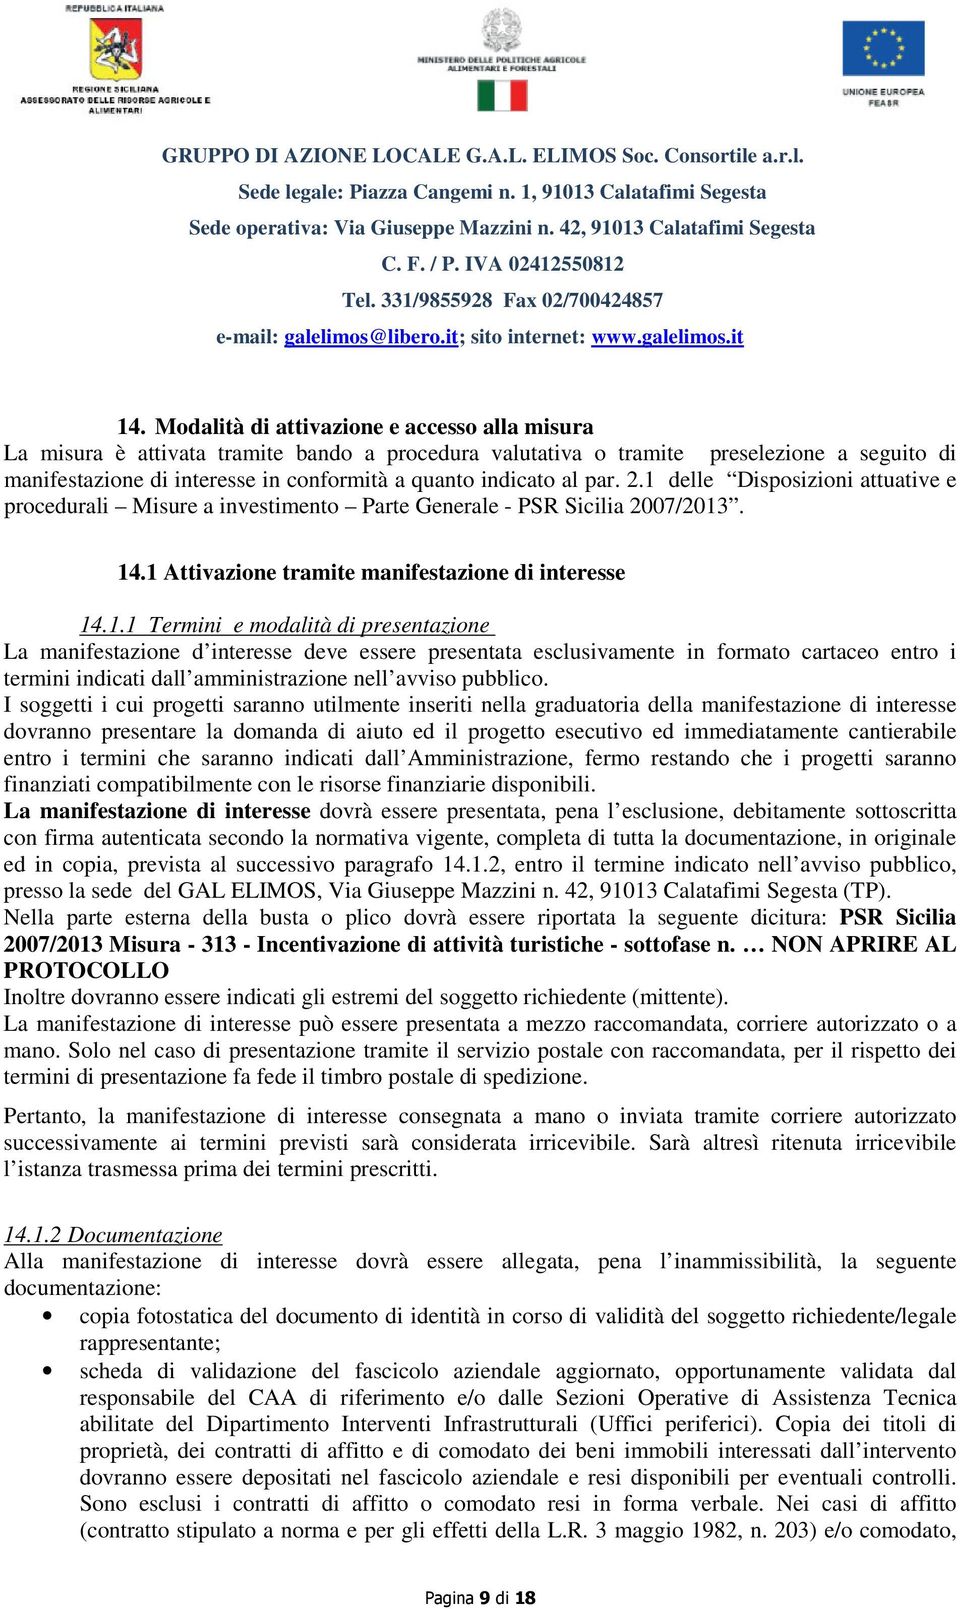 delle Disposizioni attuative e procedurali Misure a investimento Parte Generale - PSR Sicilia 2007/2013